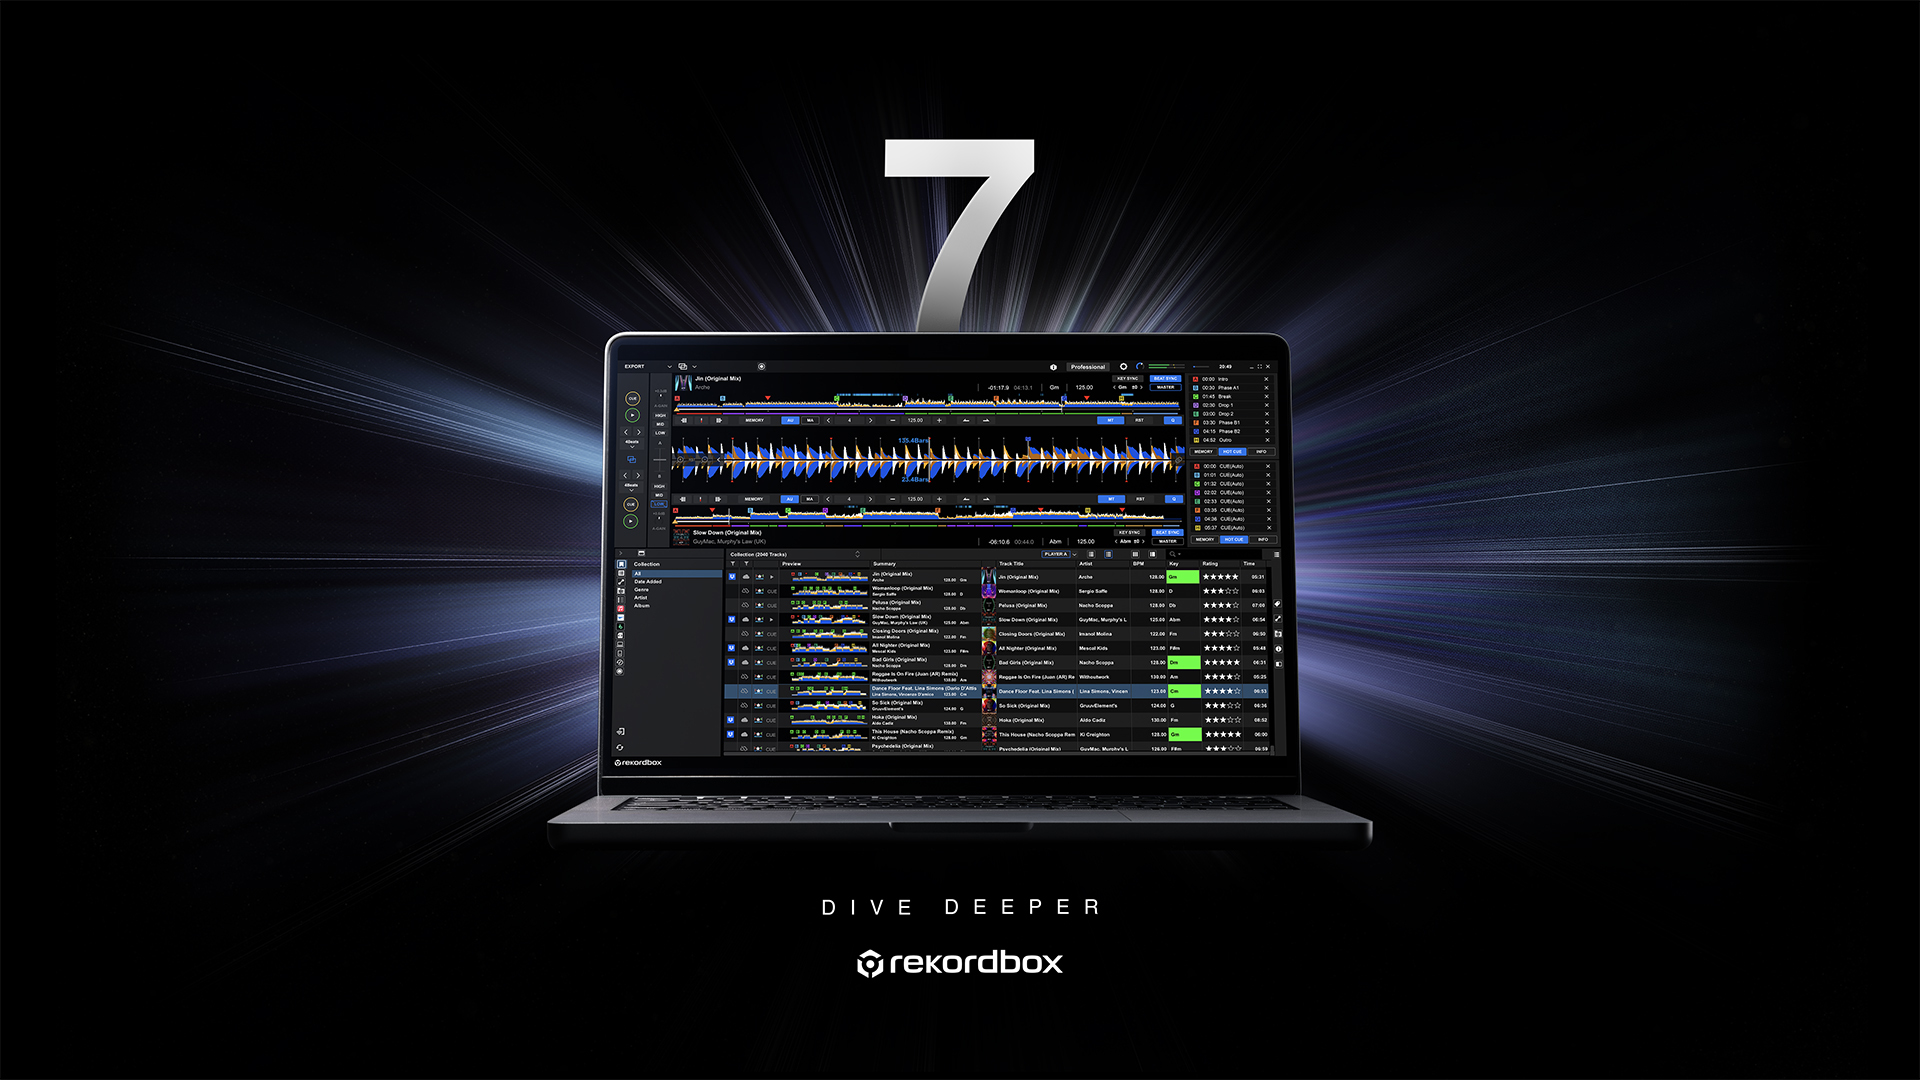 すべての作業が劇的に簡単・快適に　
DJのライフスタイルを支援するDJソフトウェア
「rekordbox ver. 7.0.0」をローンチ